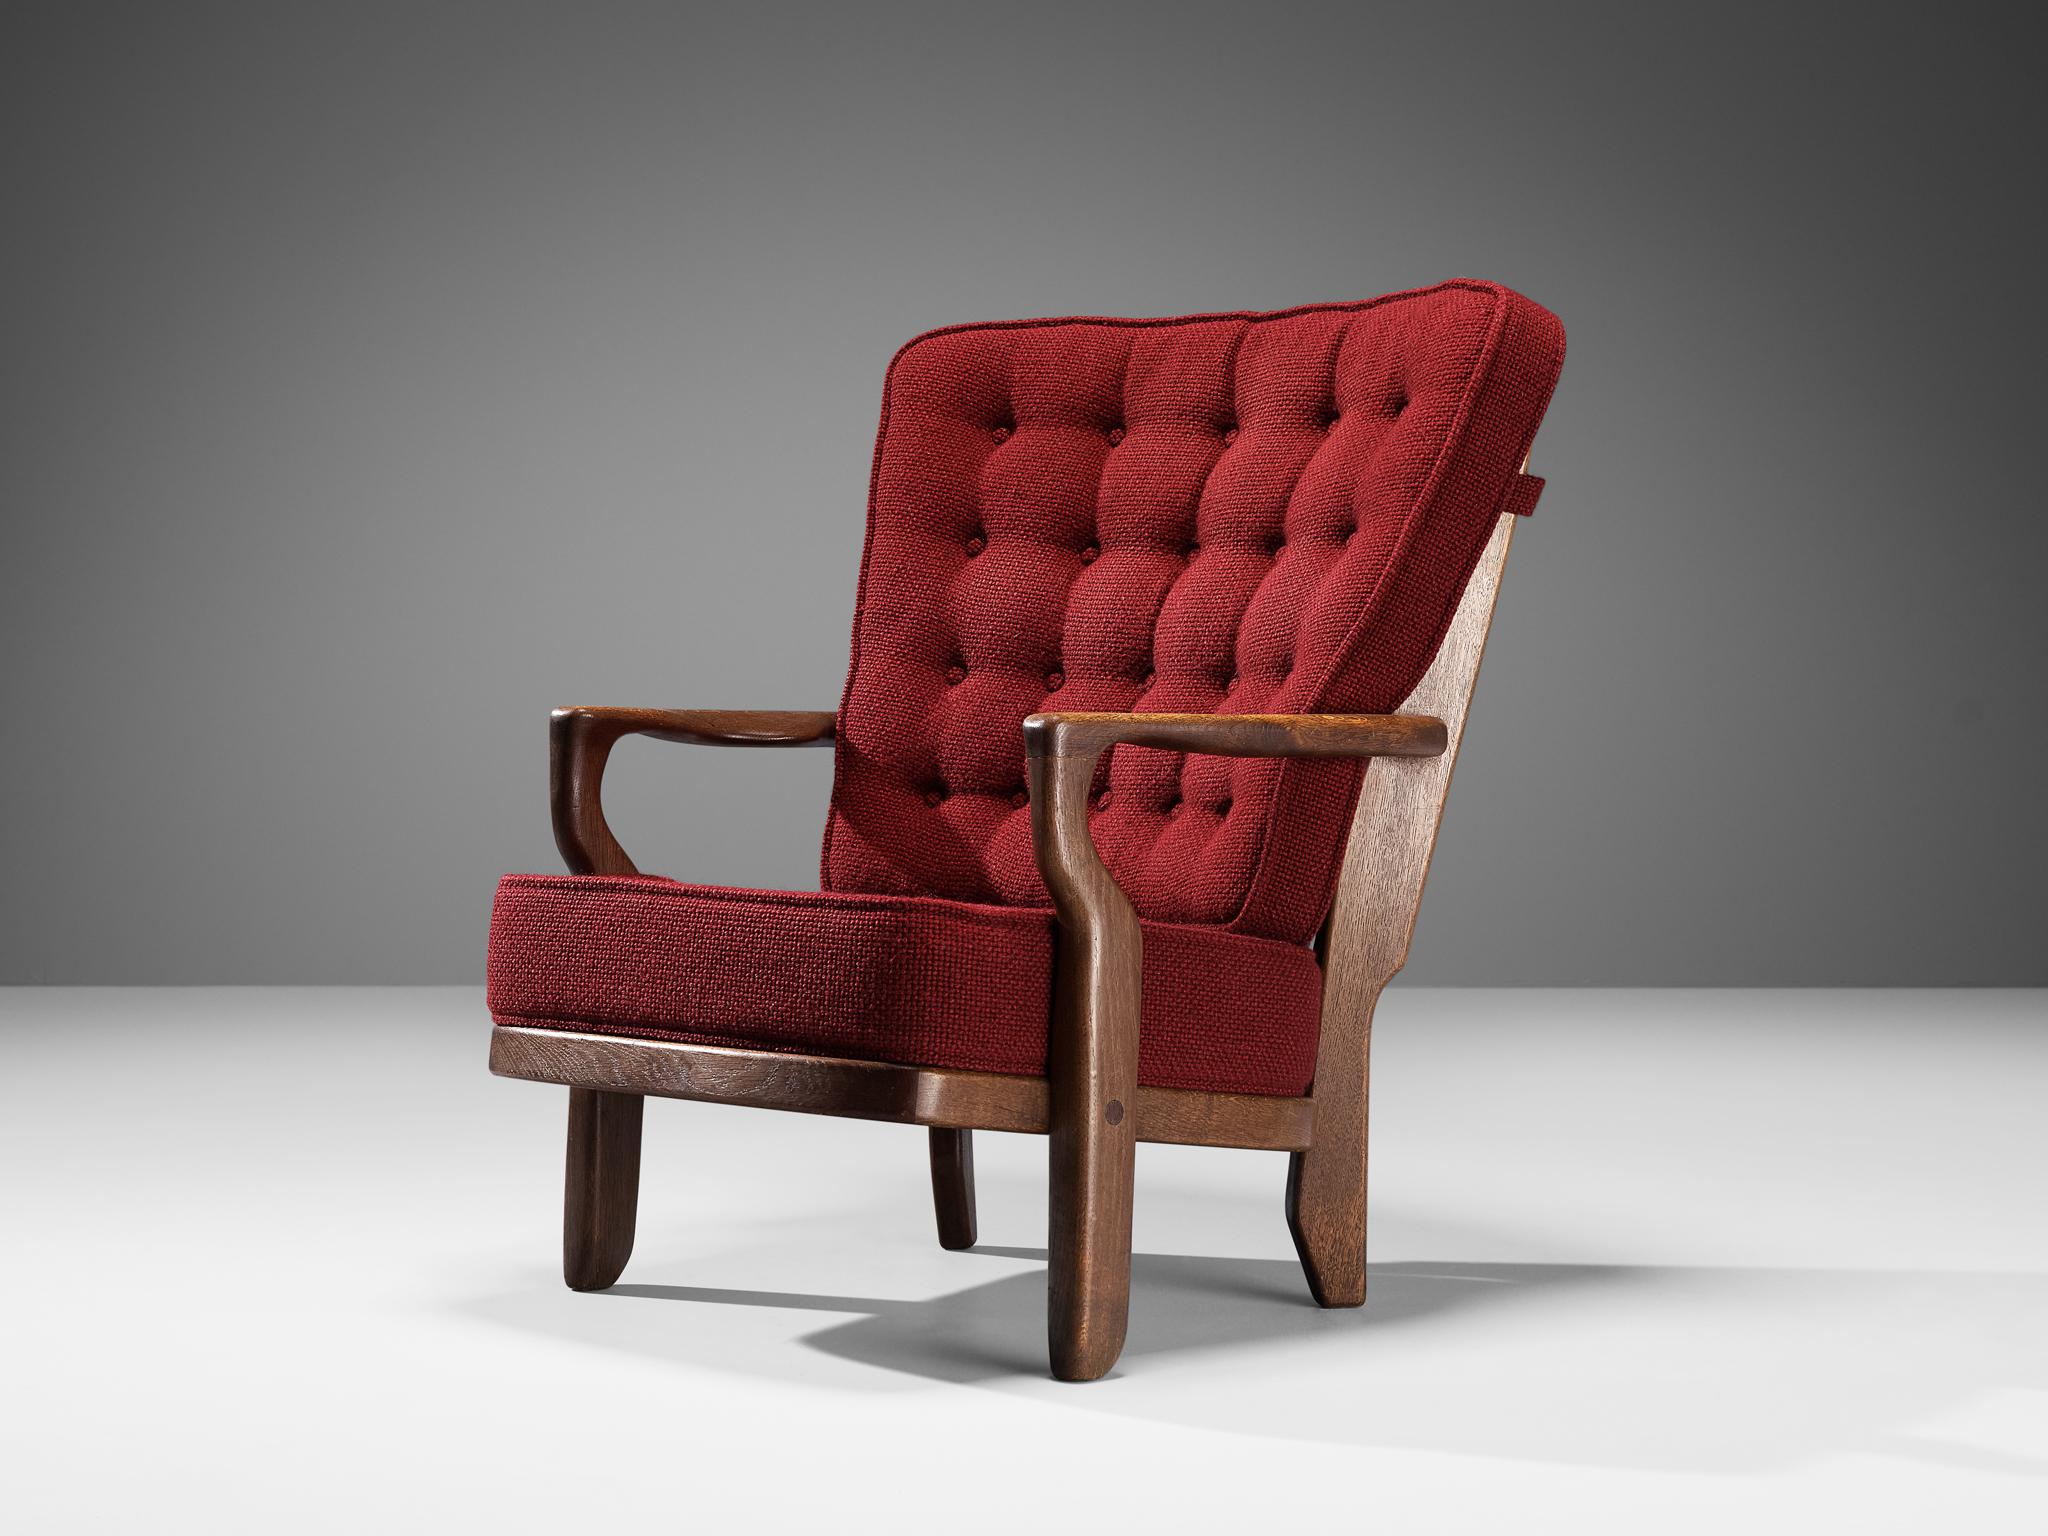 Guillerme & Chambron pour Votre Maison, chaise longue modèle 'Mid Repos', chêne, laine, France, années 1960

Guillerme et Chambron sont connus pour leurs meubles en chêne massif de haute qualité, dont celui-ci est un autre exemple. Cette chaise à